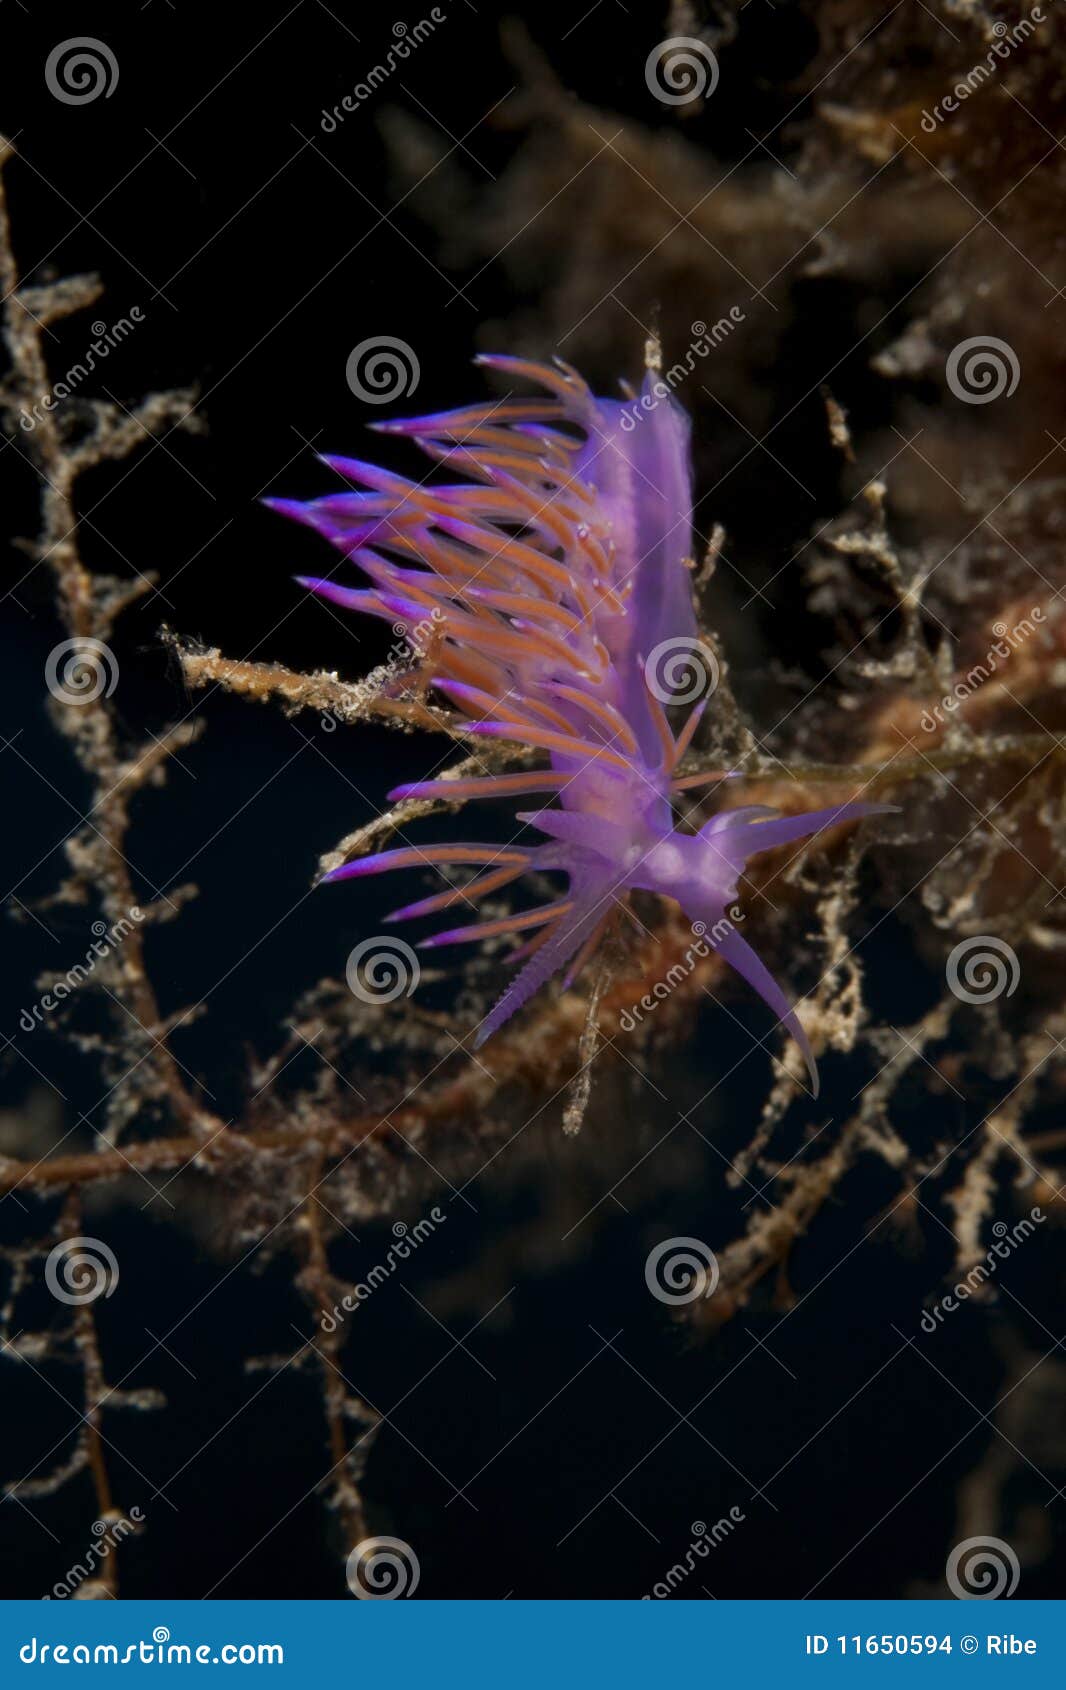 Purple Sea Slug stock photo. Image of colourful, scuba - 11650594